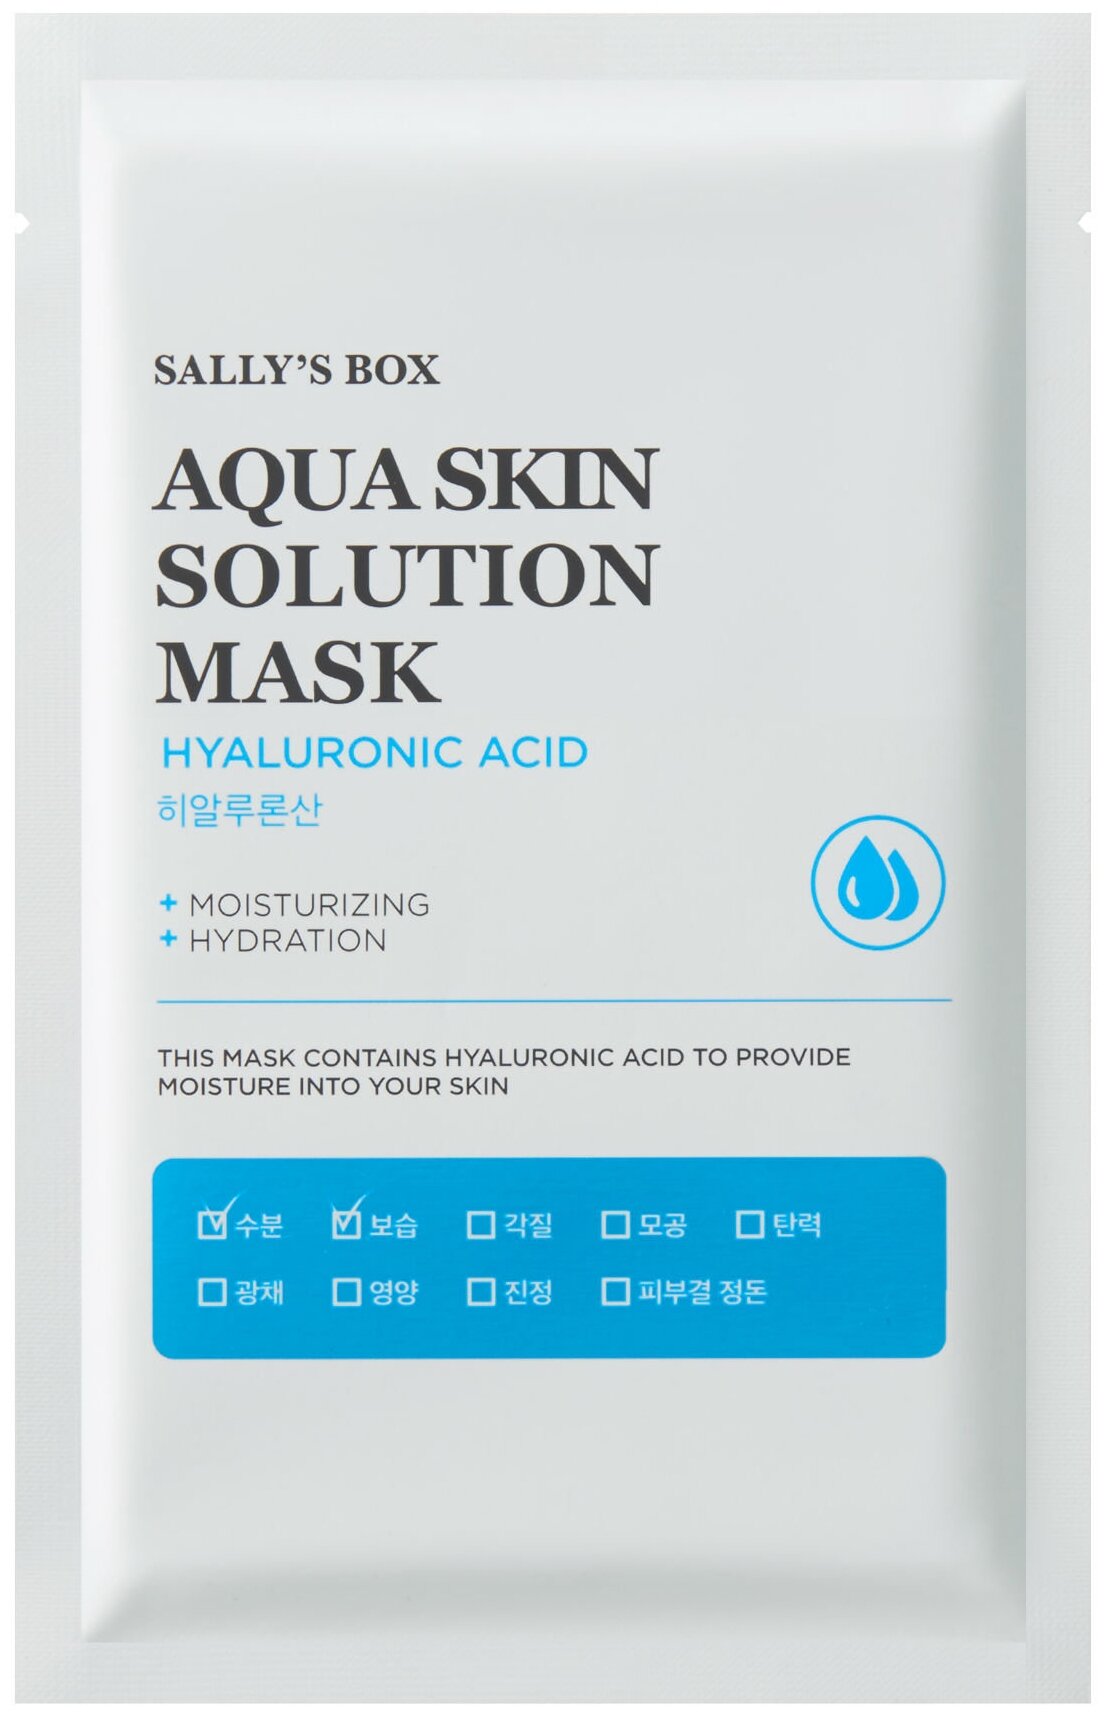 Sally’s Box Aqua Skin Solution Mask Hyaluronic Acid тканевая маска гиалуроновая кислота